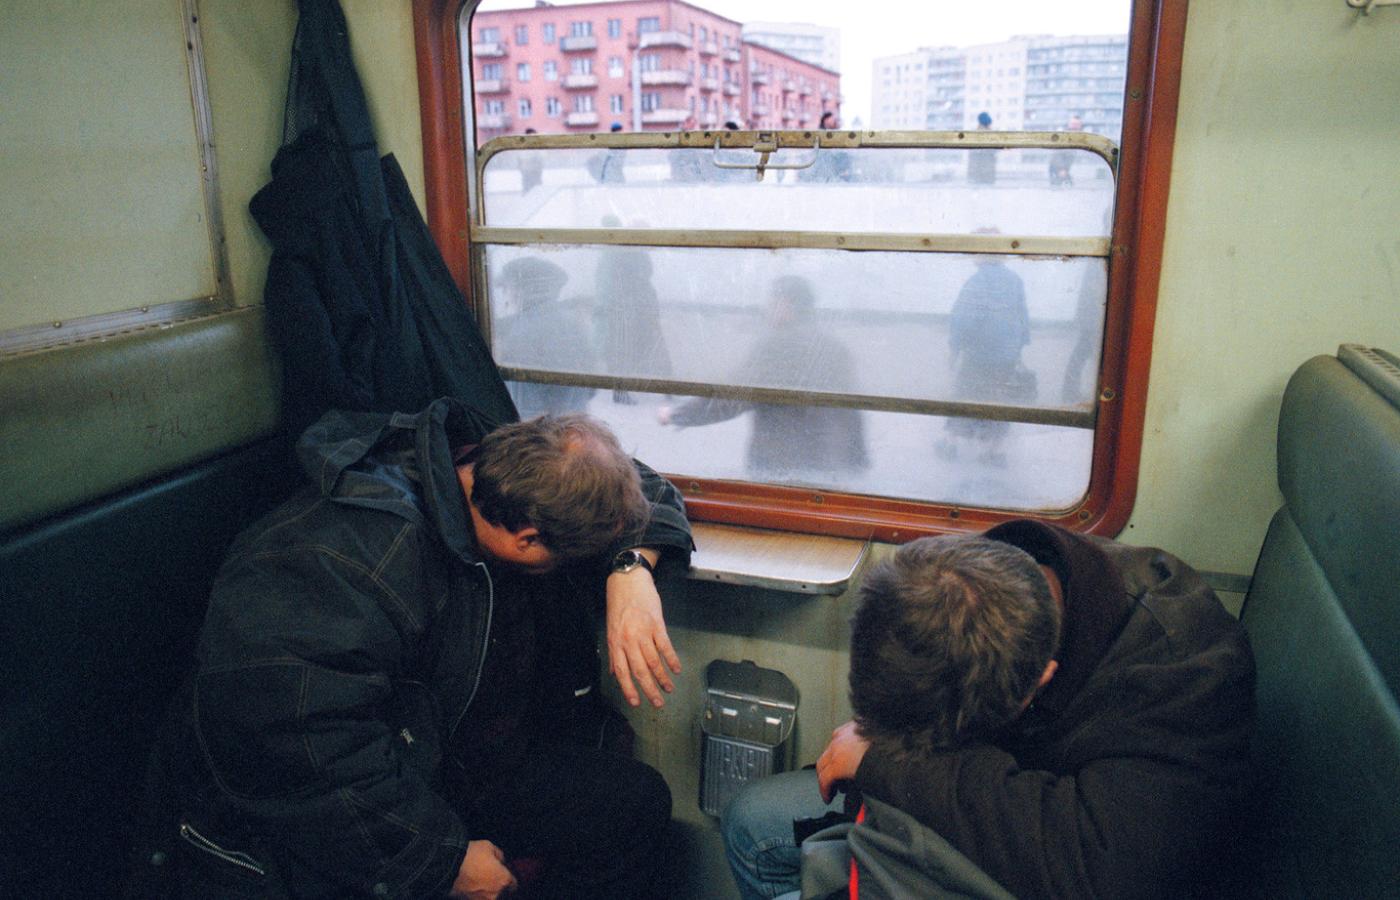 W niemiłosiernie brudnym pociągu najlepsze miejsca są przy oknie